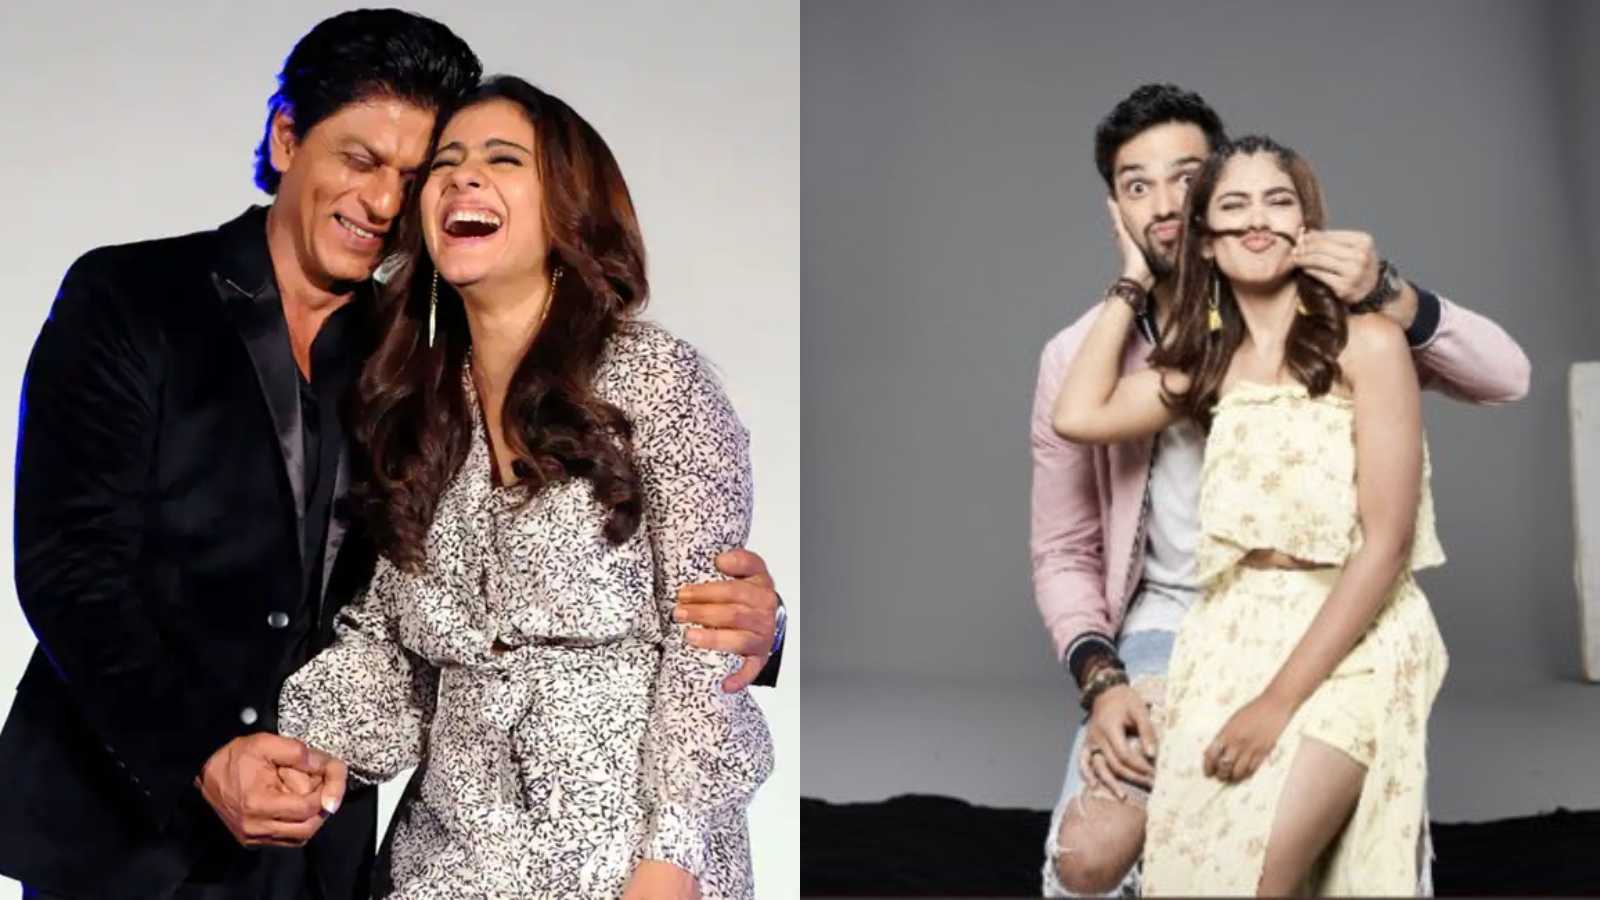 Kaisi Yeh Yaariyaan duo Parth Samthaan and Niti Taylor react to fans comparing them with Shah Rukh Khan and Kajol